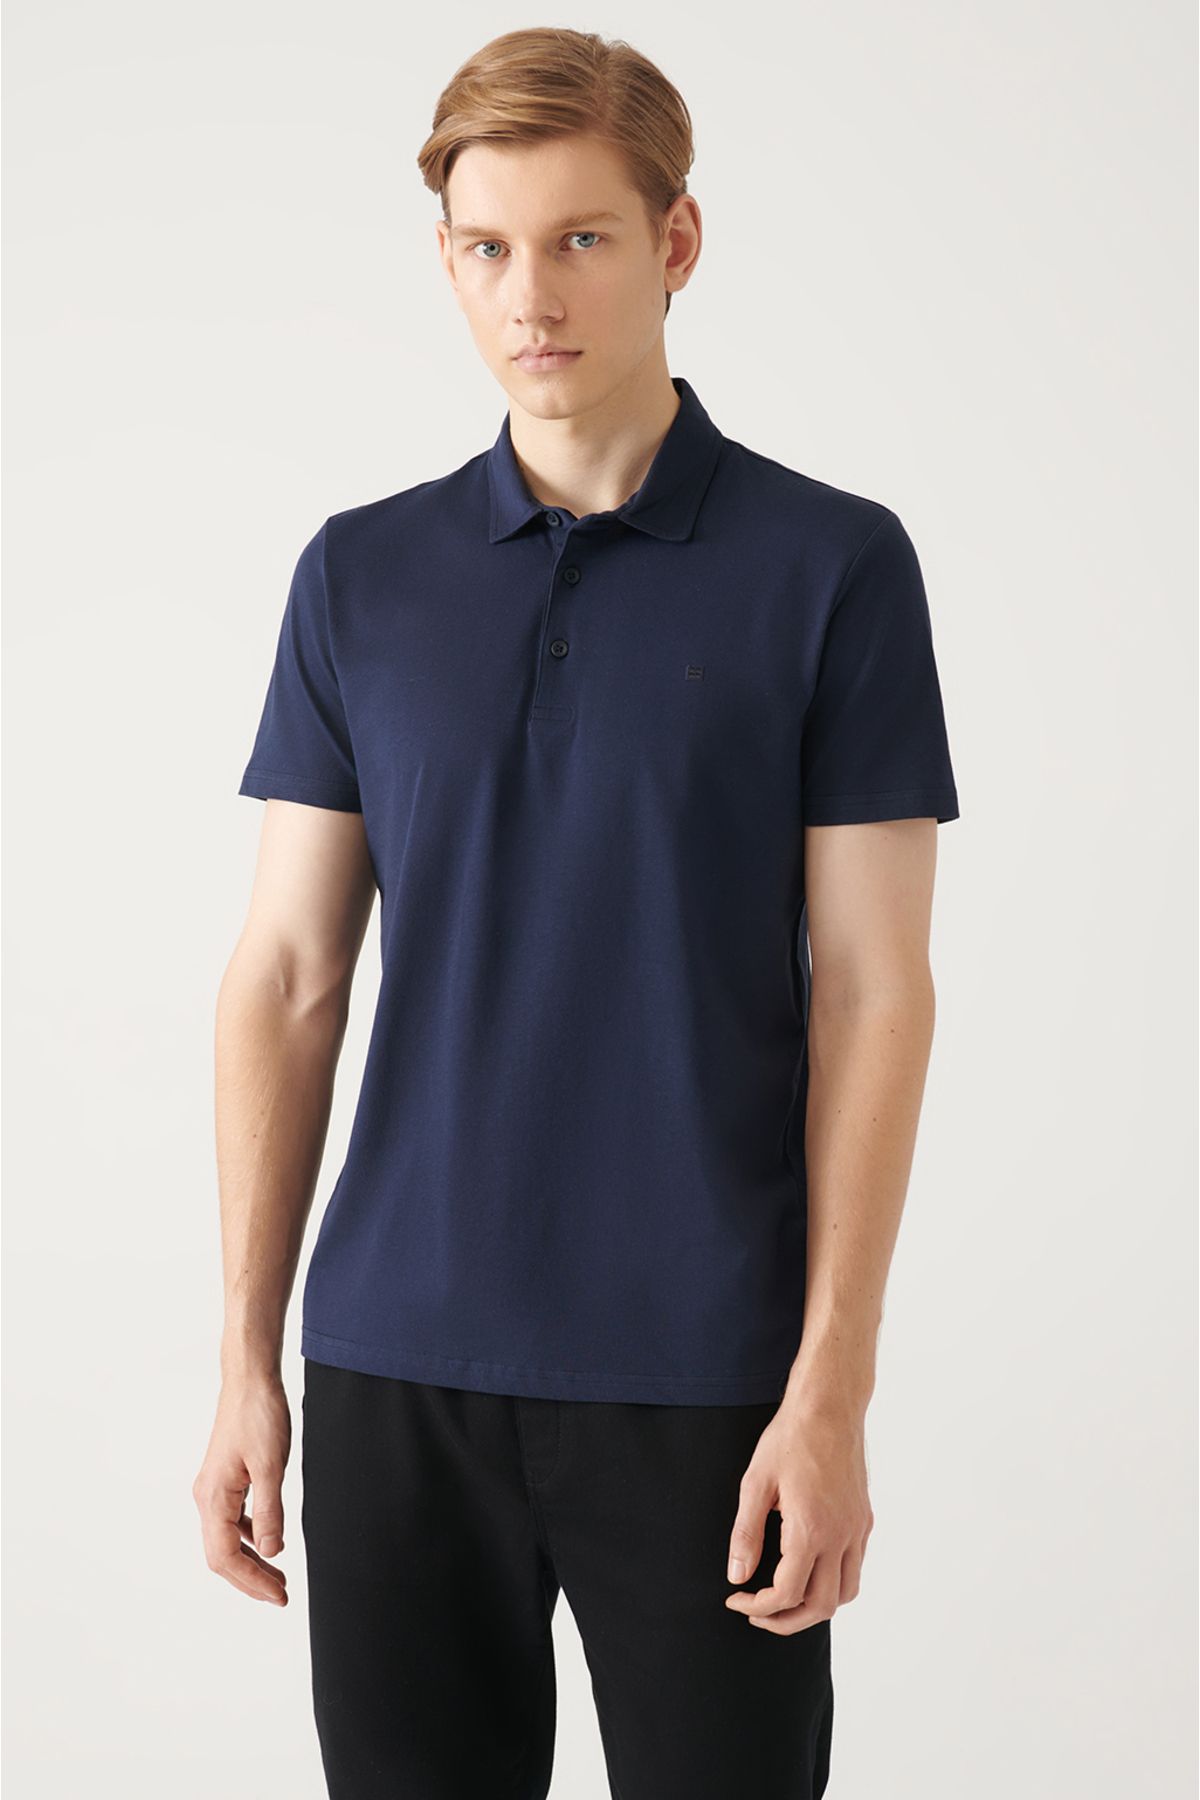 Avva Erkek Lacivert %100 Pamuk Regular Fit 3 Düğmeli Kıvrılmaz Polo Yaka T-shirt E001035